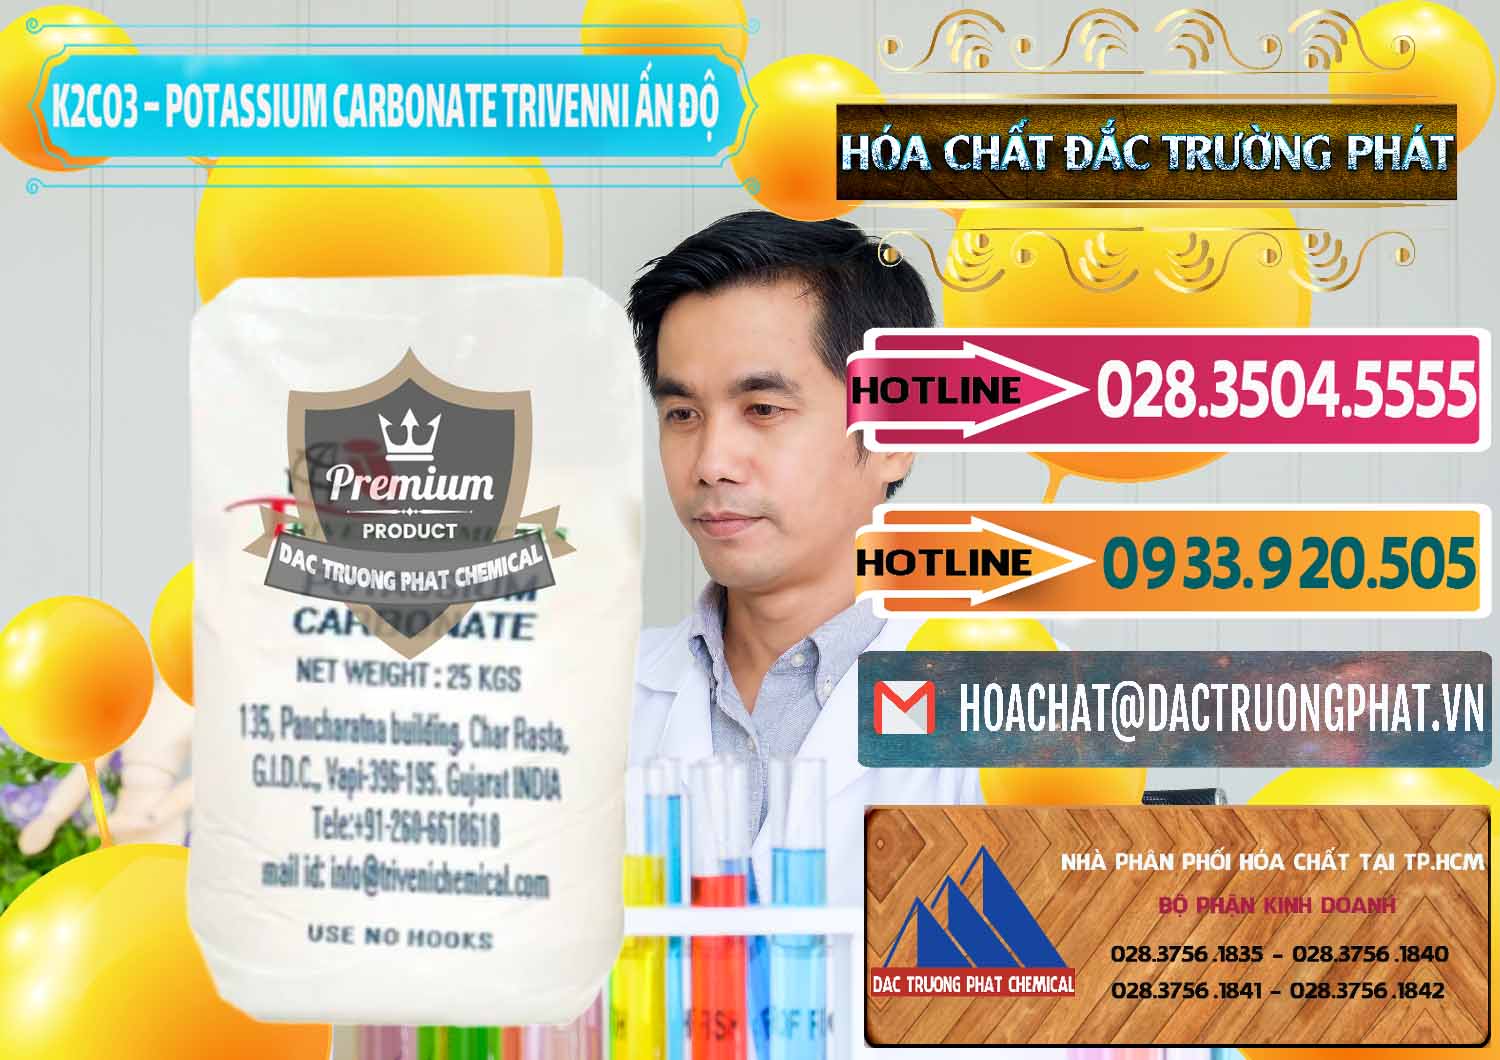 Chuyên bán - cung ứng K2Co3 – Potassium Carbonate Trivenni Ấn Độ India - 0473 - Kinh doanh - phân phối hóa chất tại TP.HCM - dactruongphat.vn